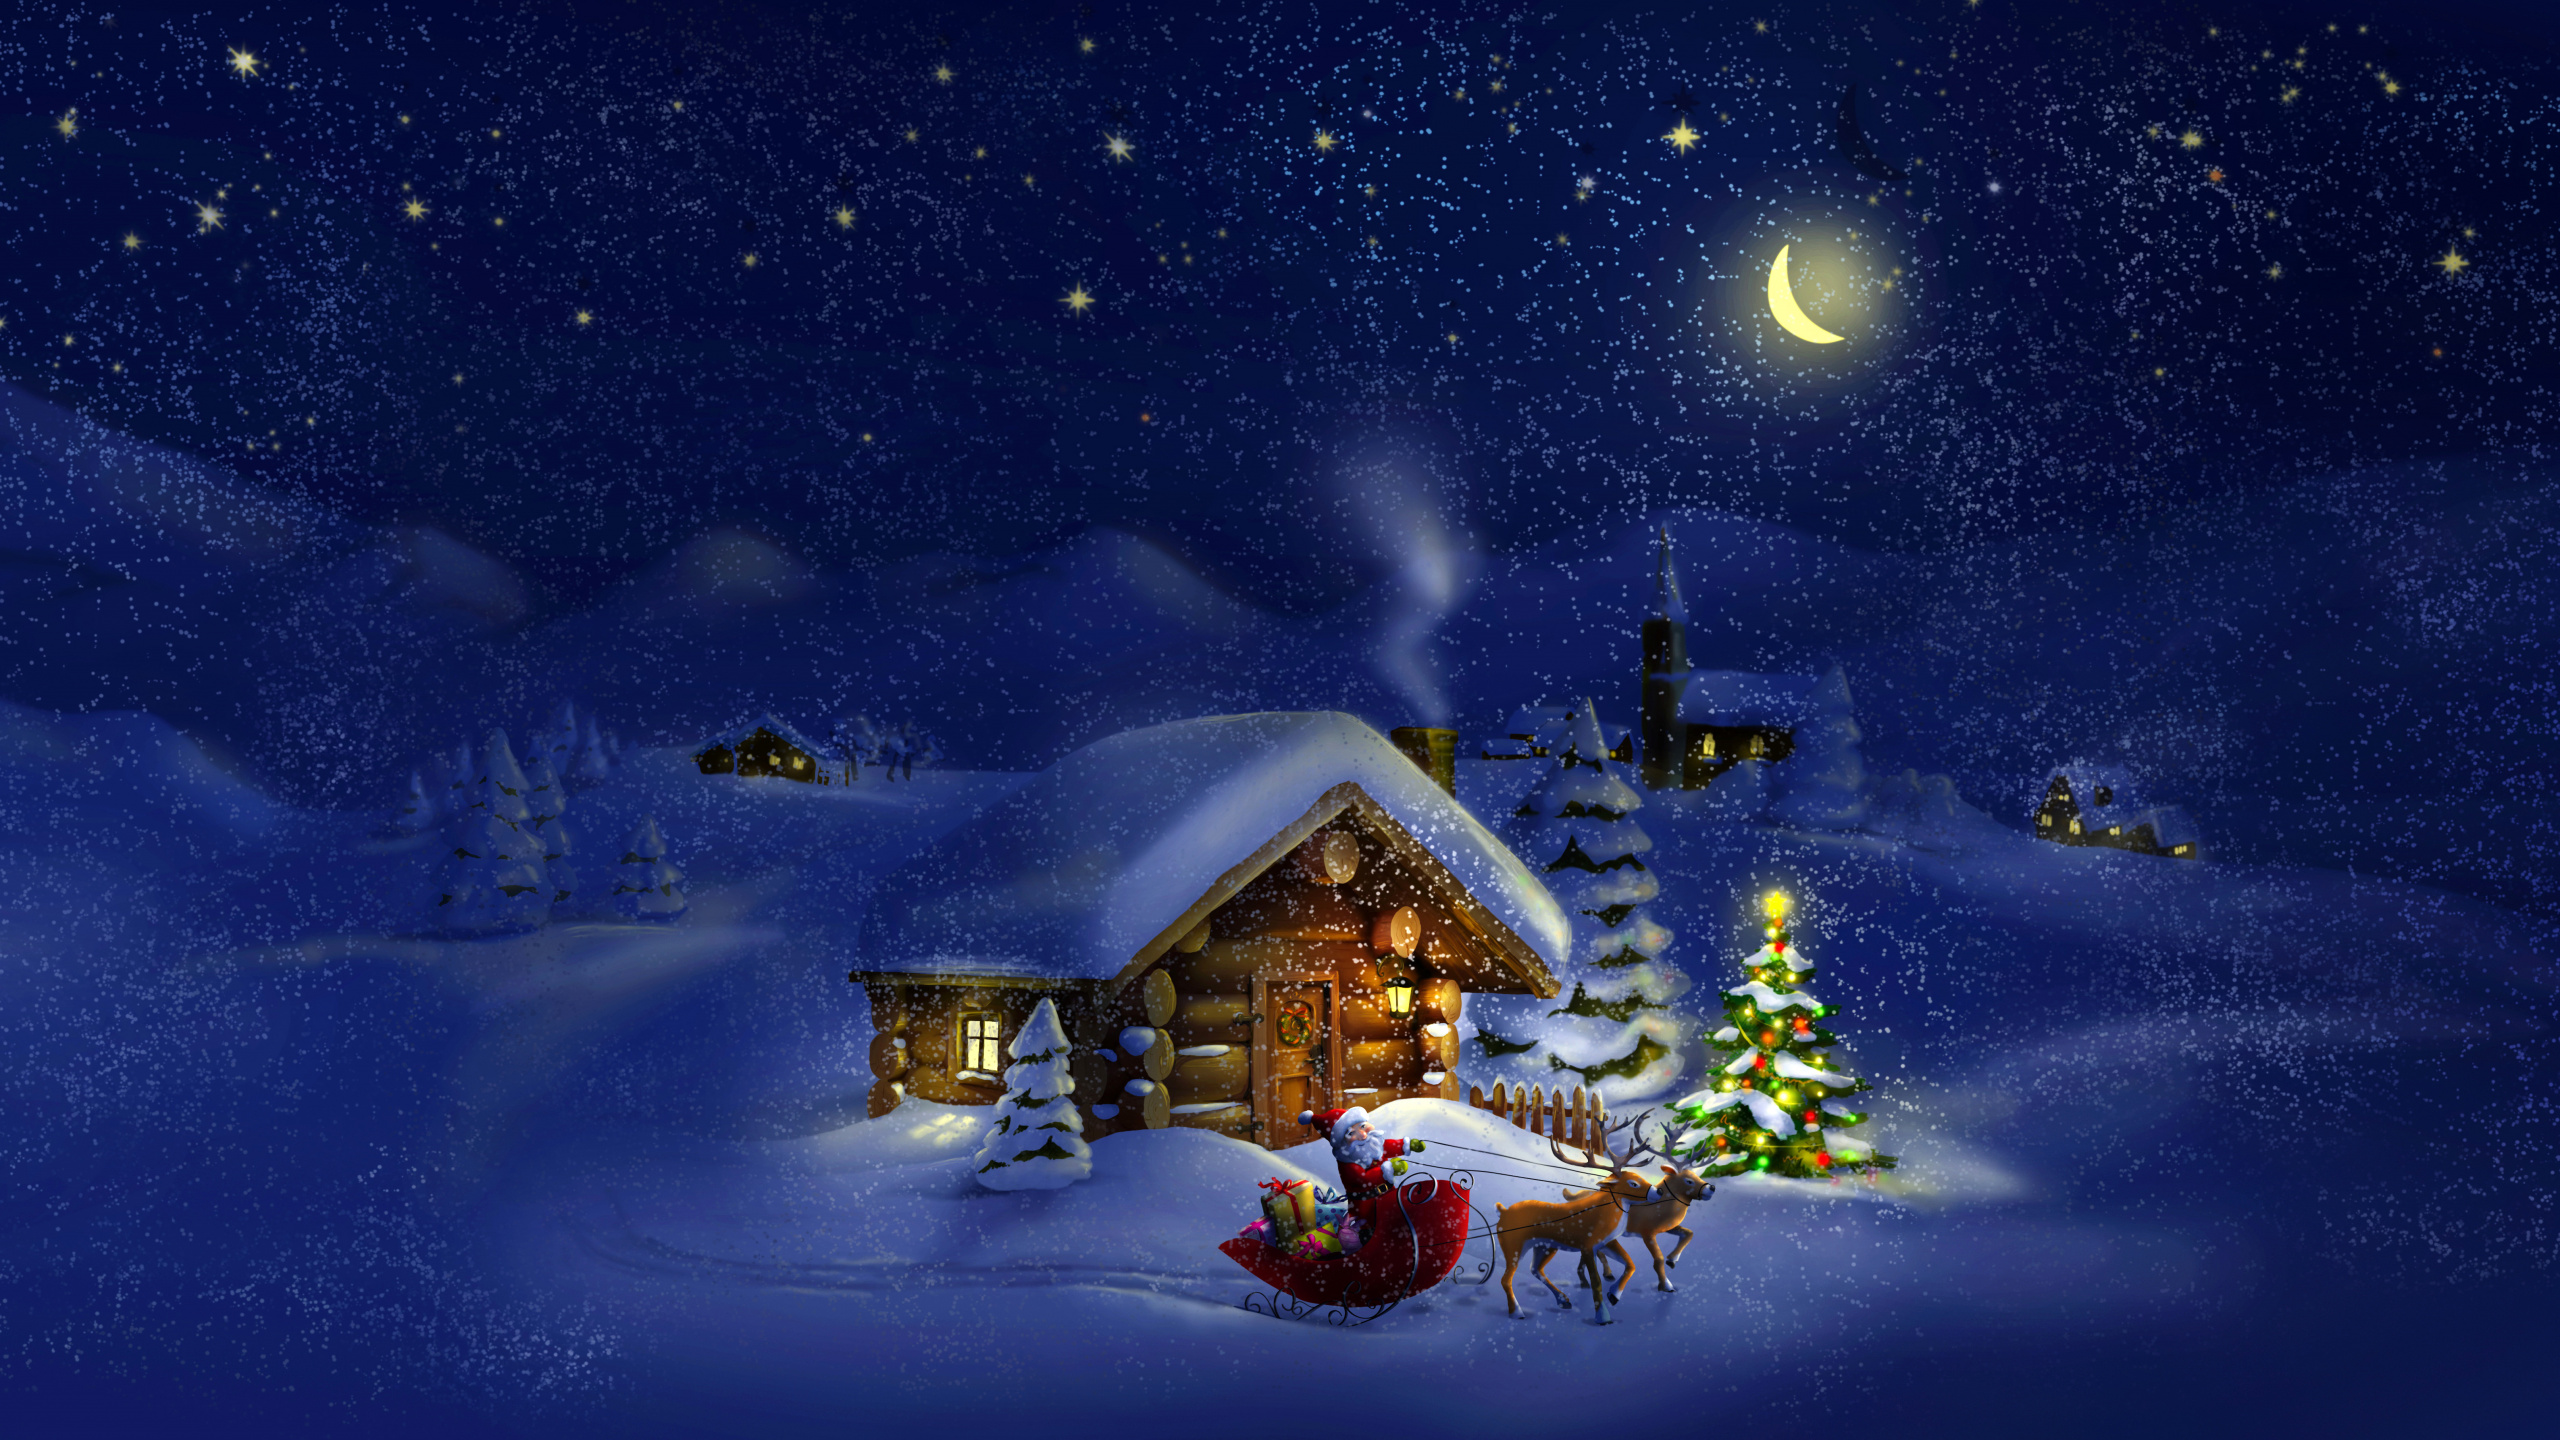 El Día De Navidad, Santa Claus, Invierno, Nieve, Navidad. Wallpaper in 2560x1440 Resolution